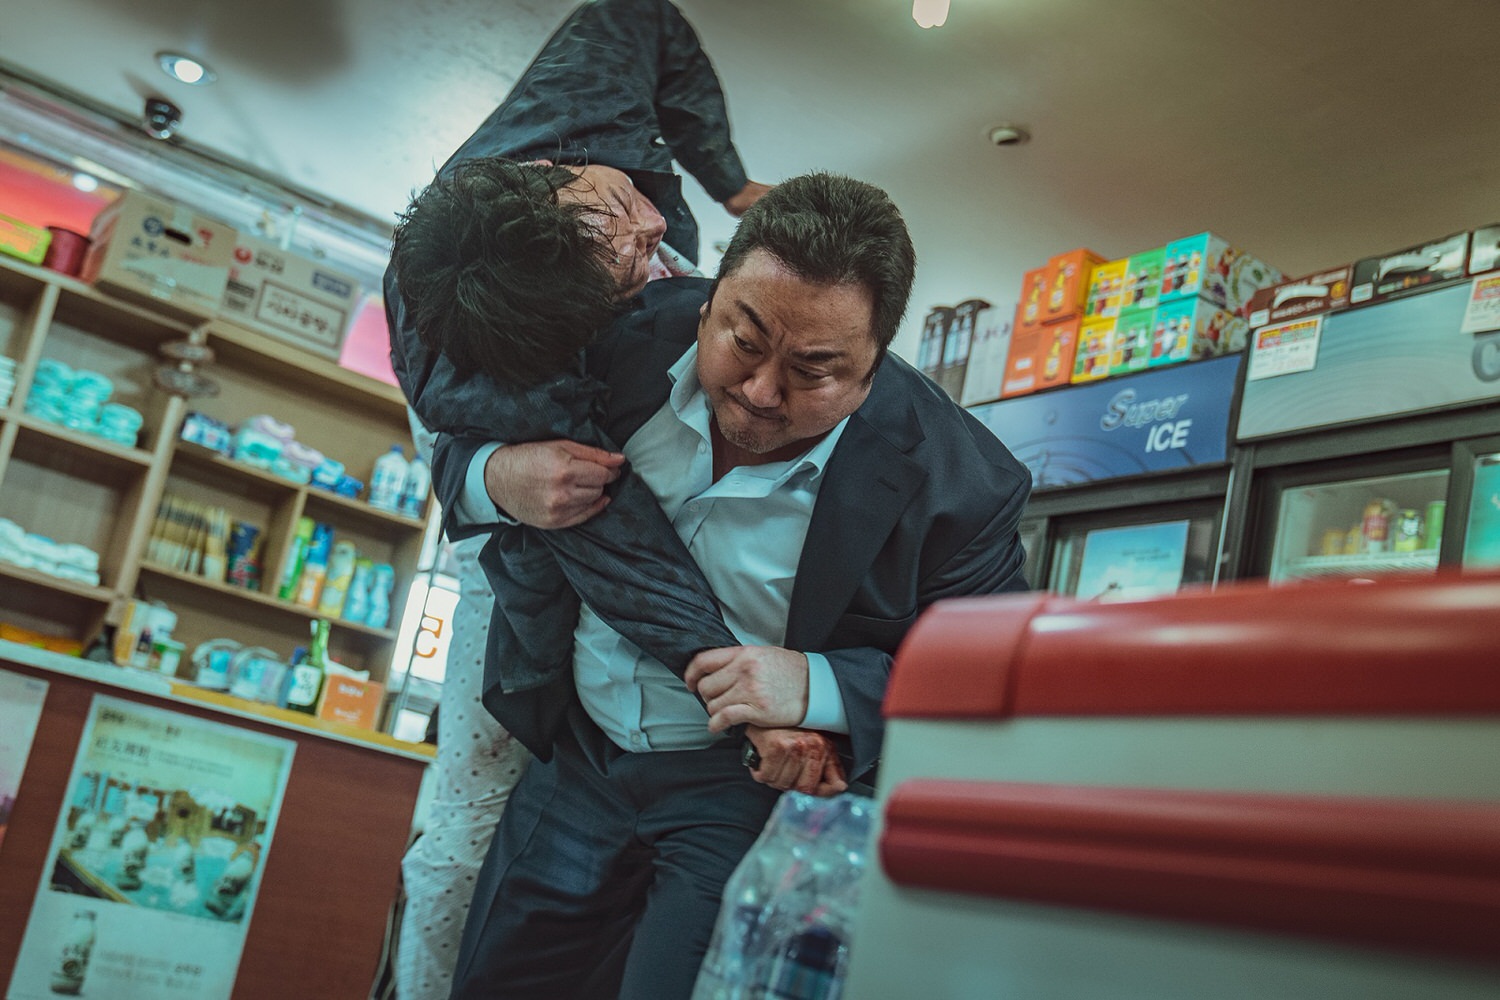 韓國電影《犯罪都市2》馬東石&孫錫久&崔貴華&朴志煥